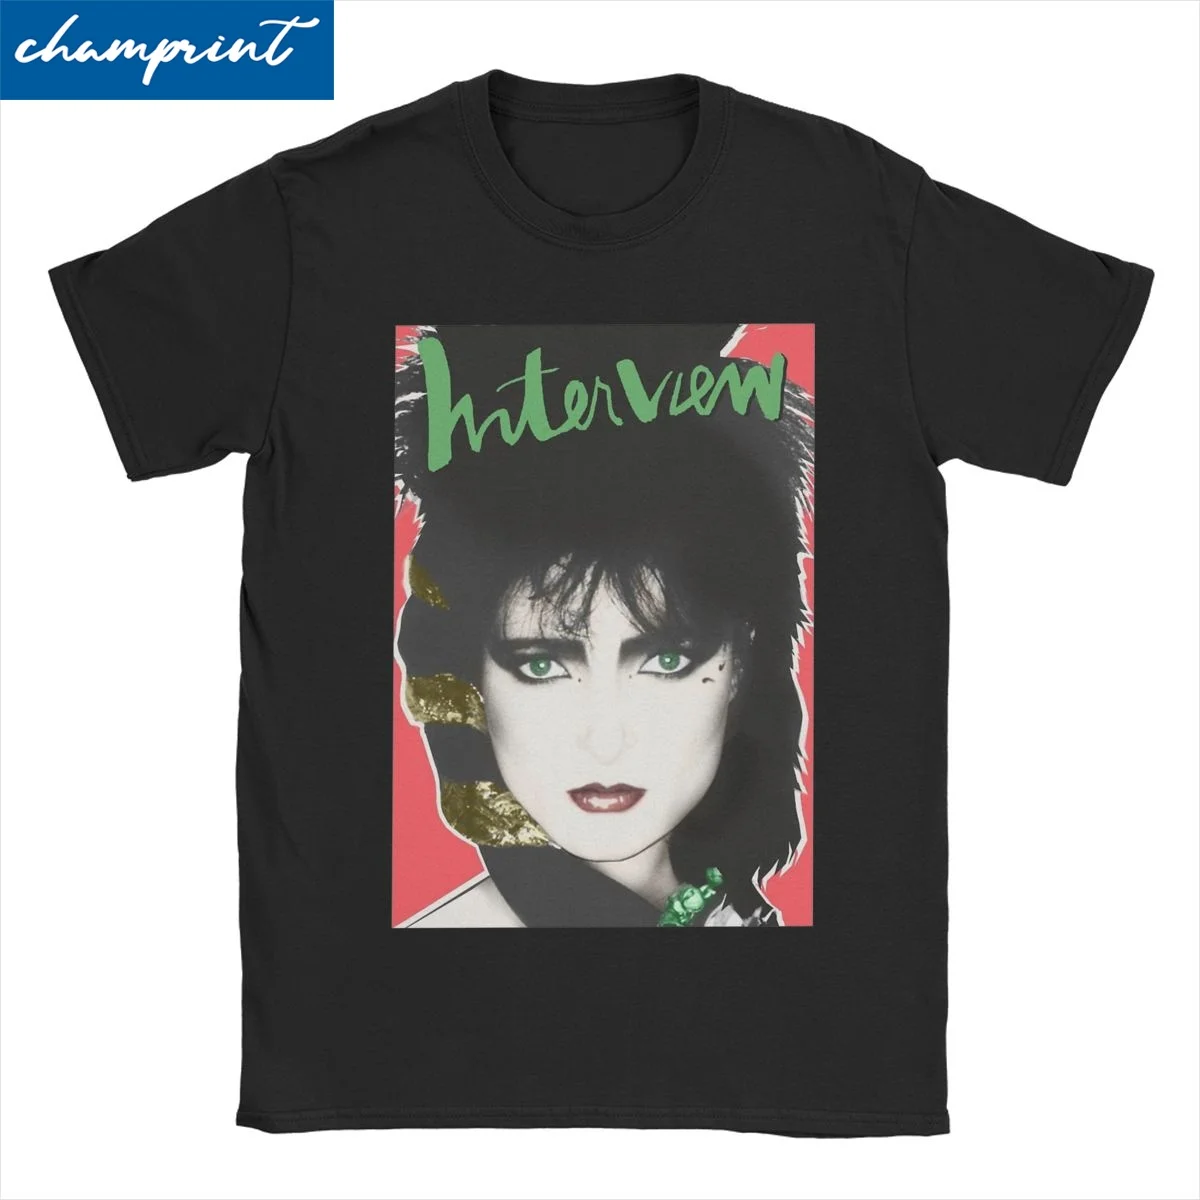 

Футболка Siouxsie Sioux для мужчин и женщин, хлопковая рубашка в британском стиле, для отдыха, рок-группы, музыки, сиокси и Банши